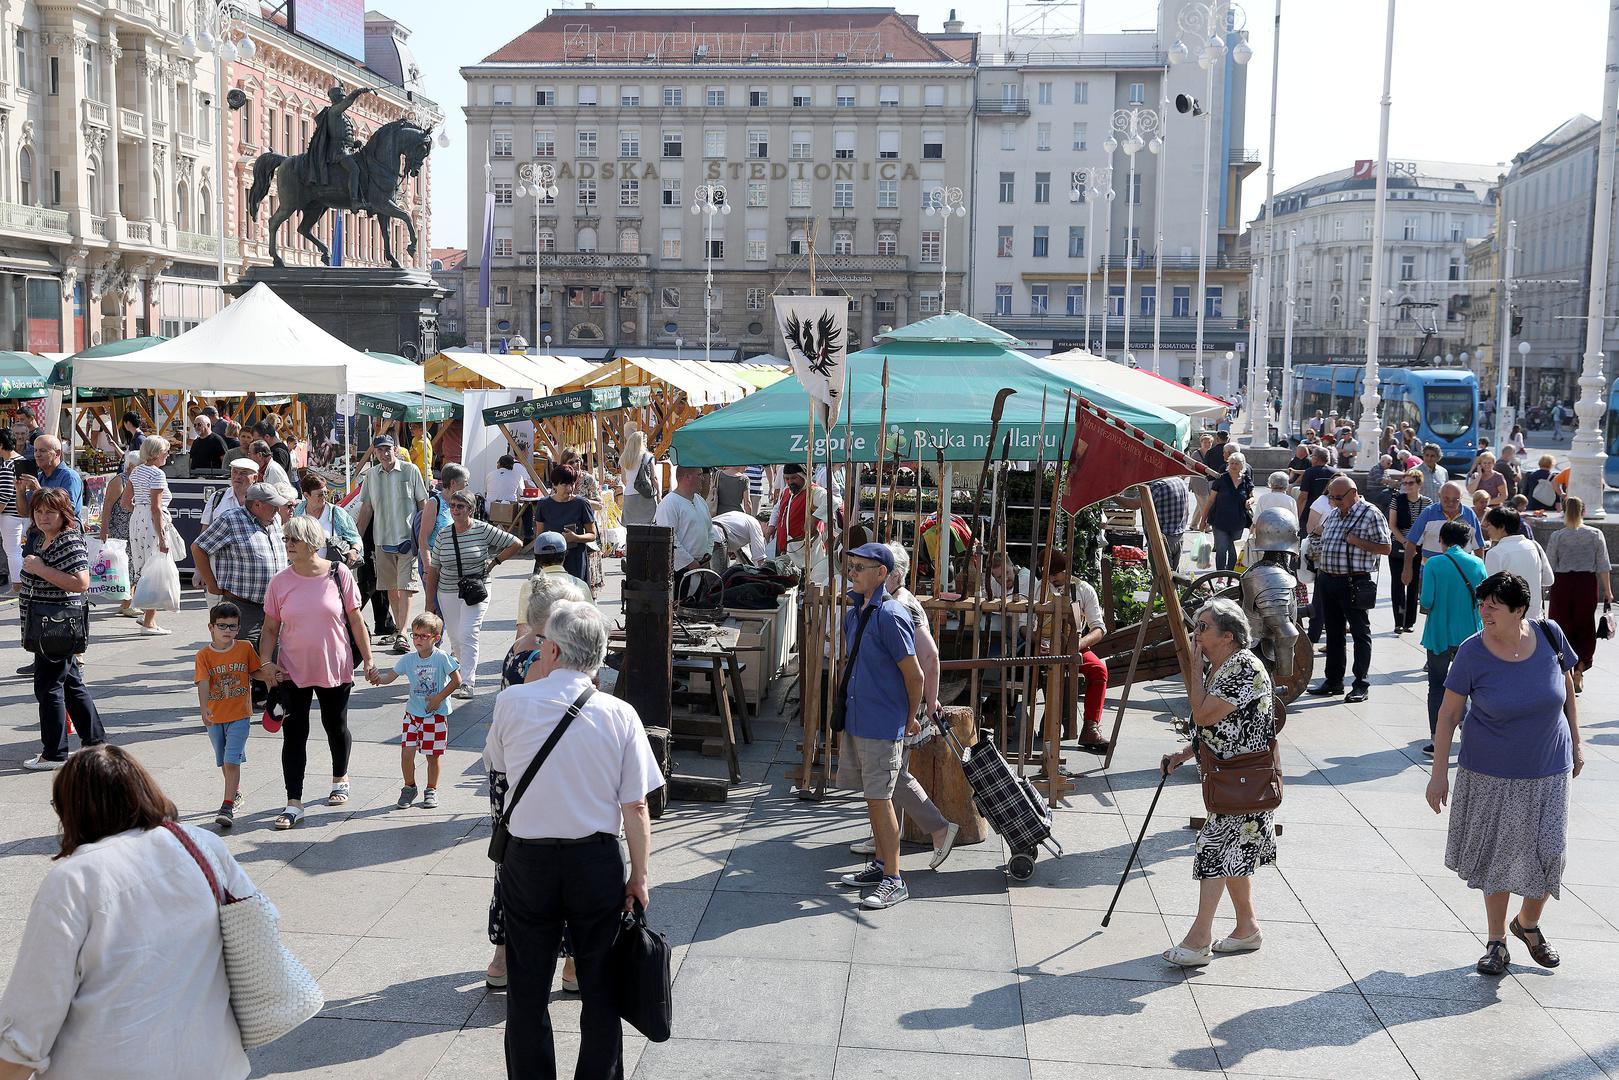 Sajam će trajati dva dana na Trgu bana Jelačića, stoga ne propustite obići, vidjeti i kušati originalne zagorske proizvode.